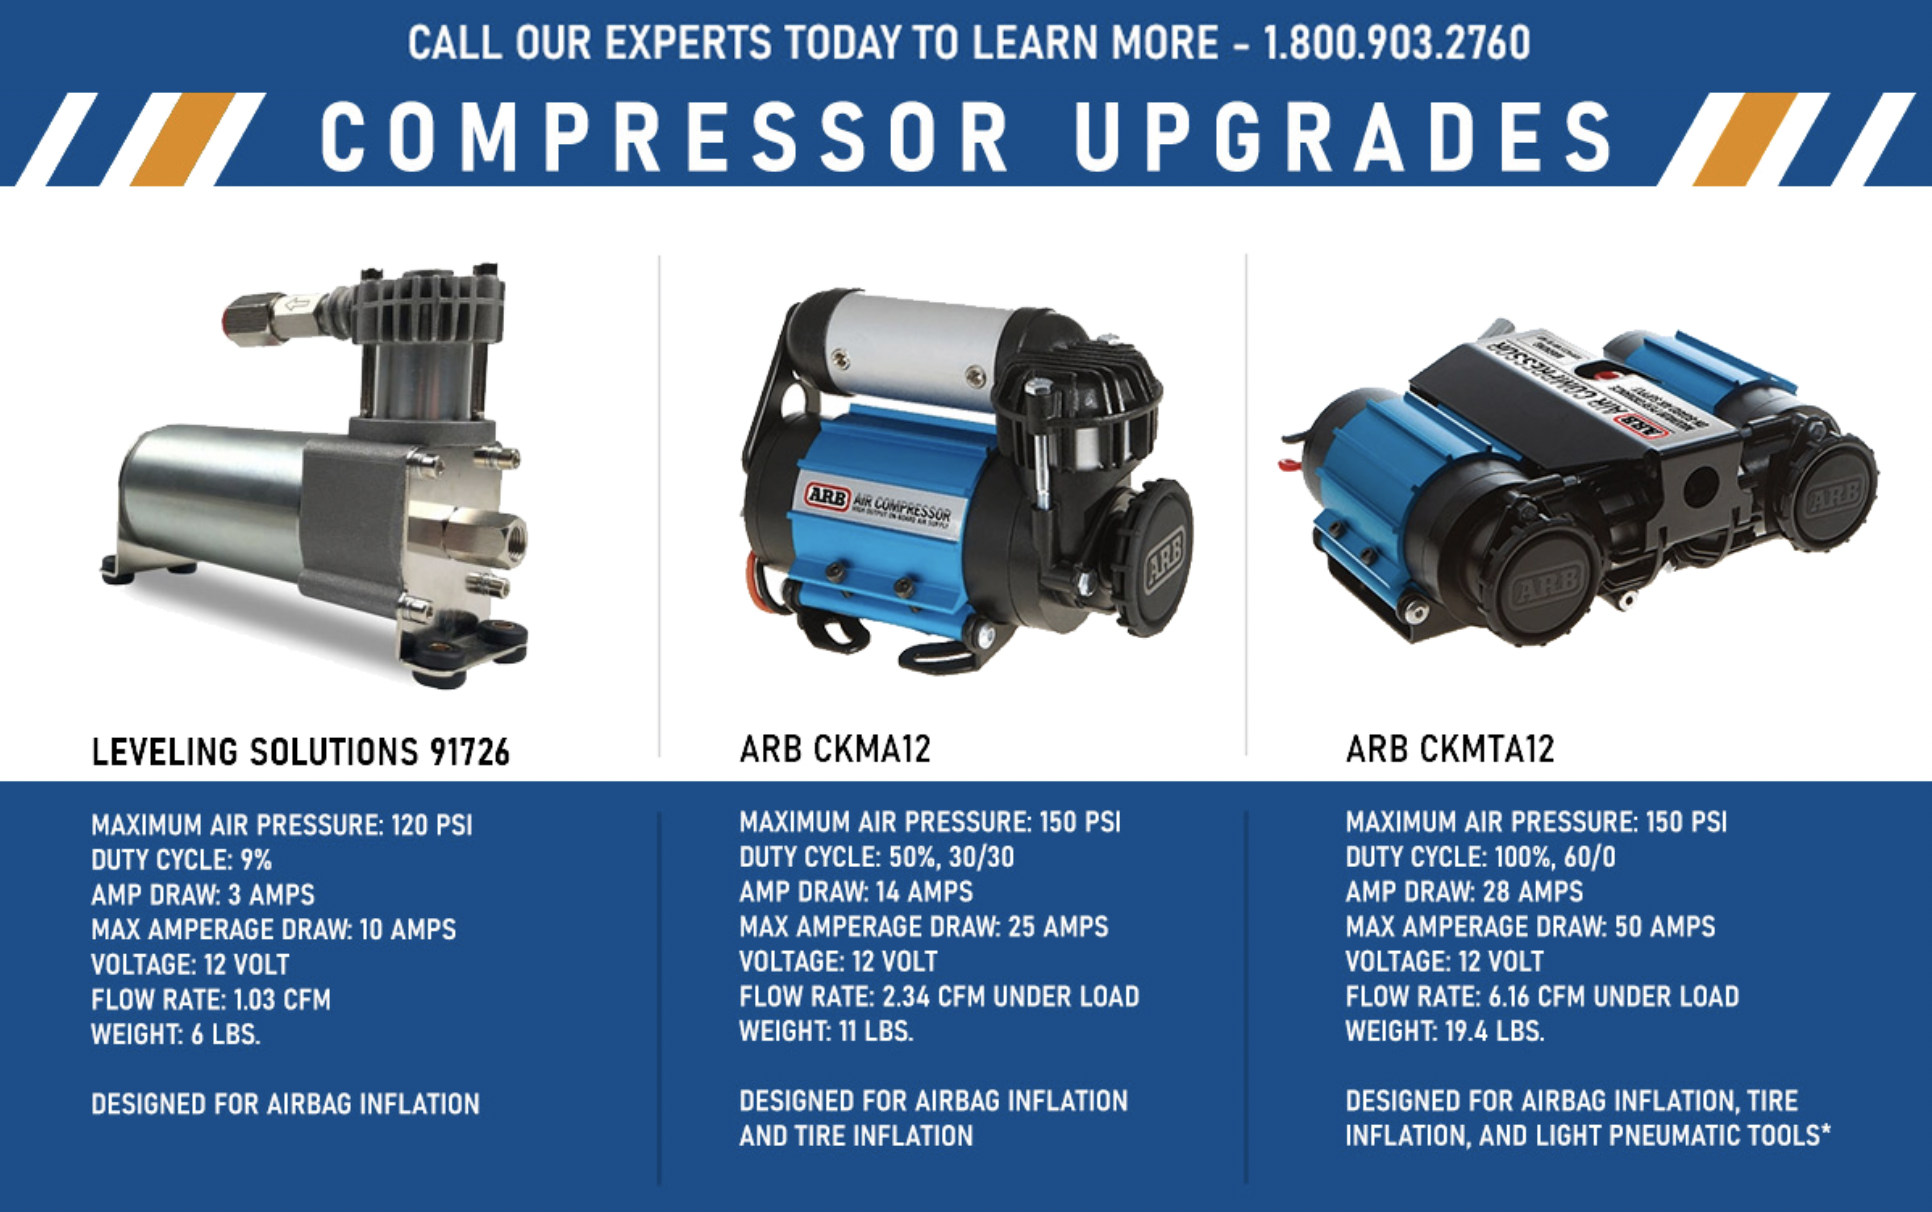 Air Compressor Upgrades